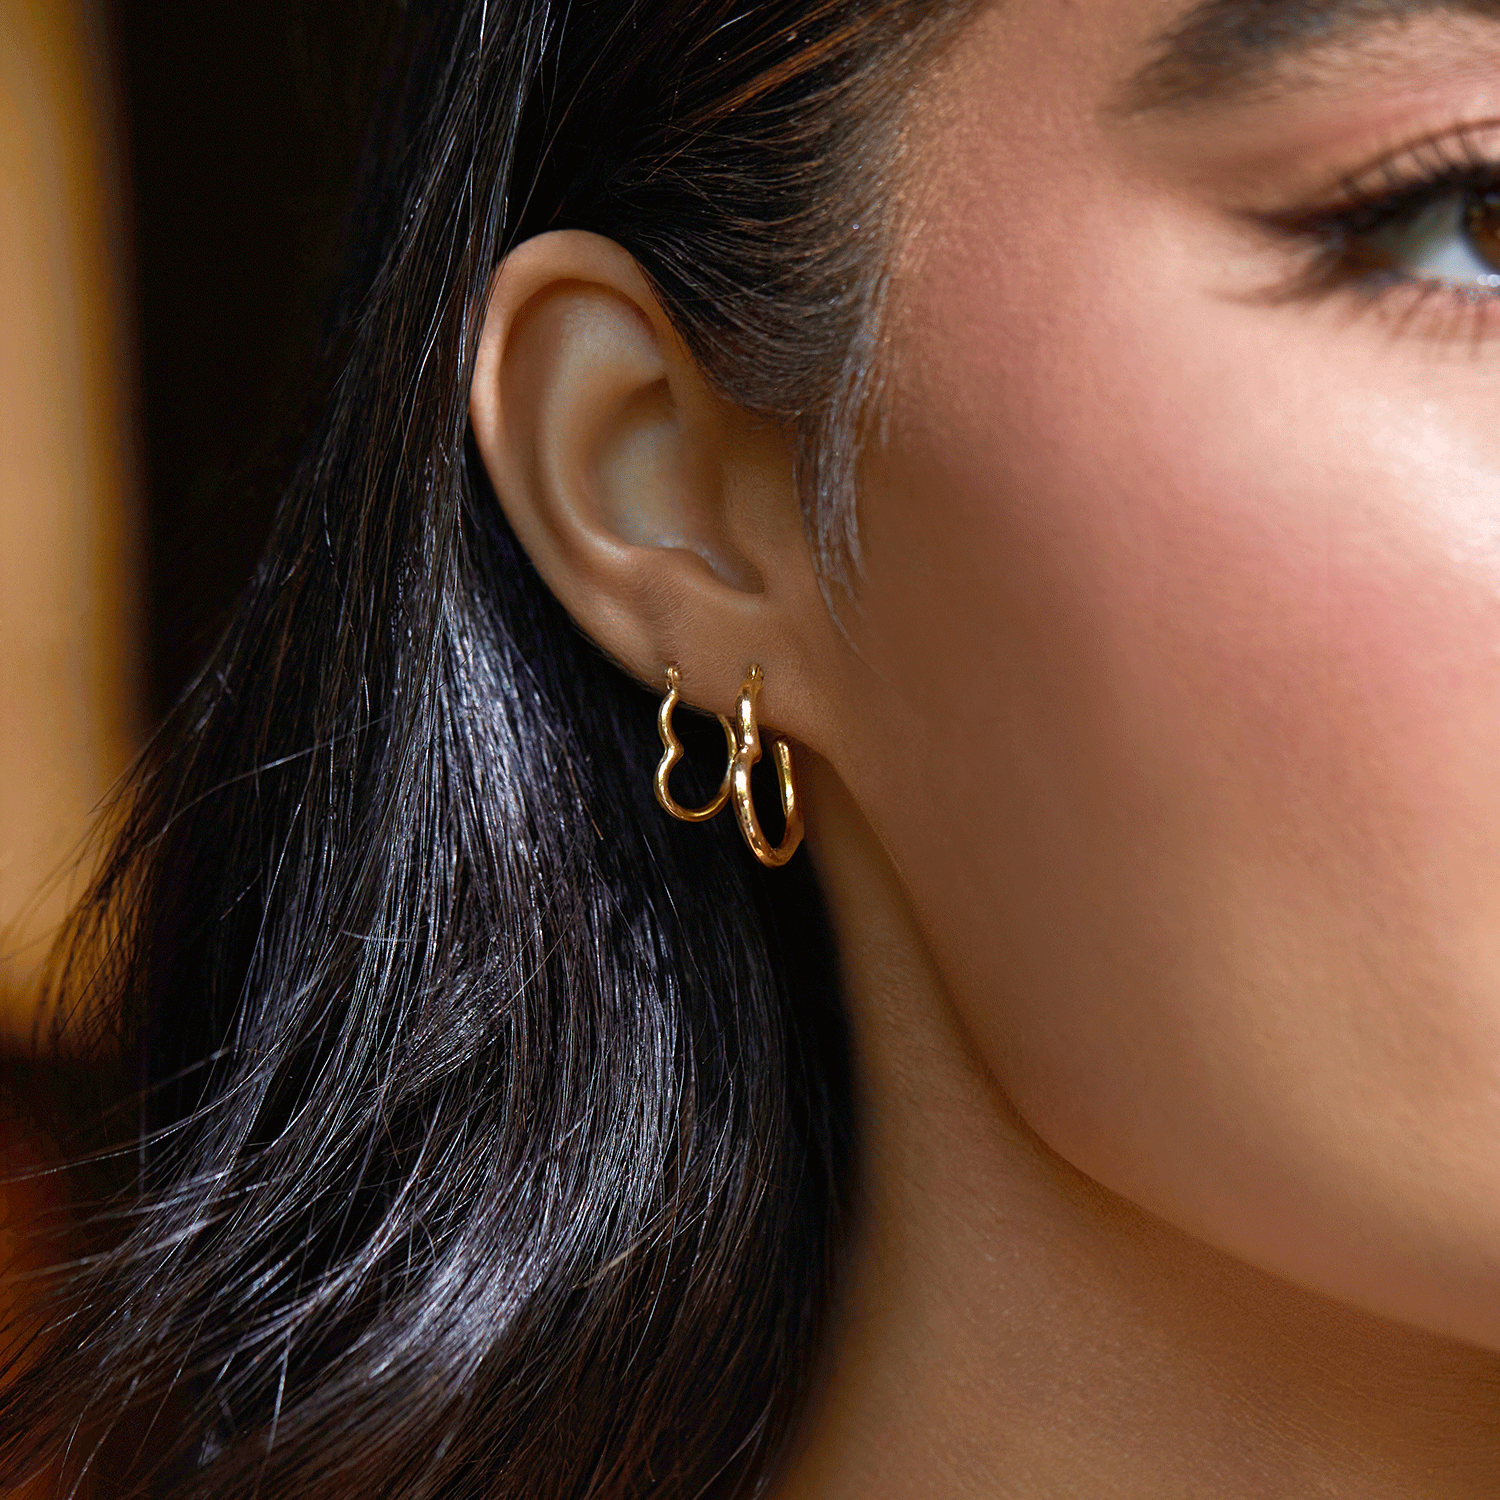 Gold Hoop Earrings, Geometric Hoop Earrings, Diamond Shaped Hoop Earrings, Statement Hoop Earrings, Hoop Earrings, Gold Hoops, Gift for Her